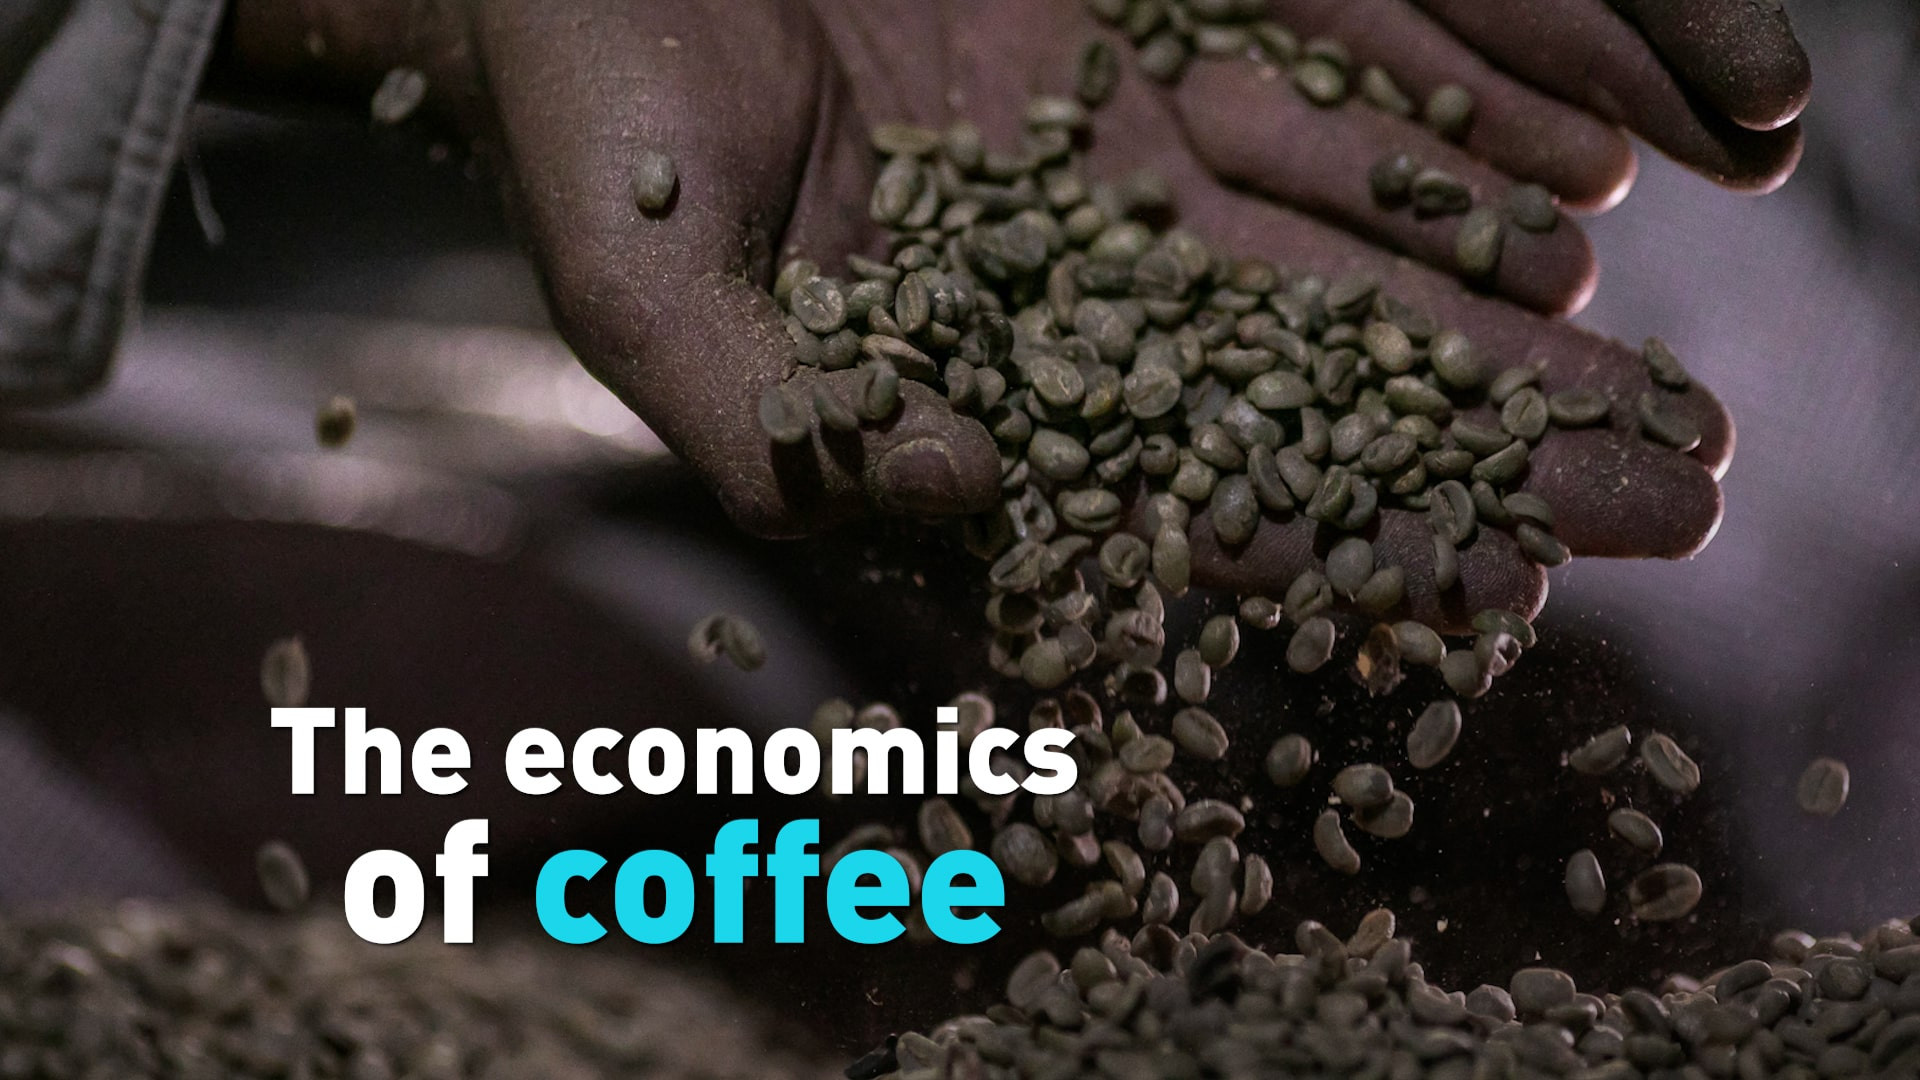 αυτή η φωτογραφία είναι για το άρθρο της magic bean σχετικά με τον καφέ και τα οικονομικά